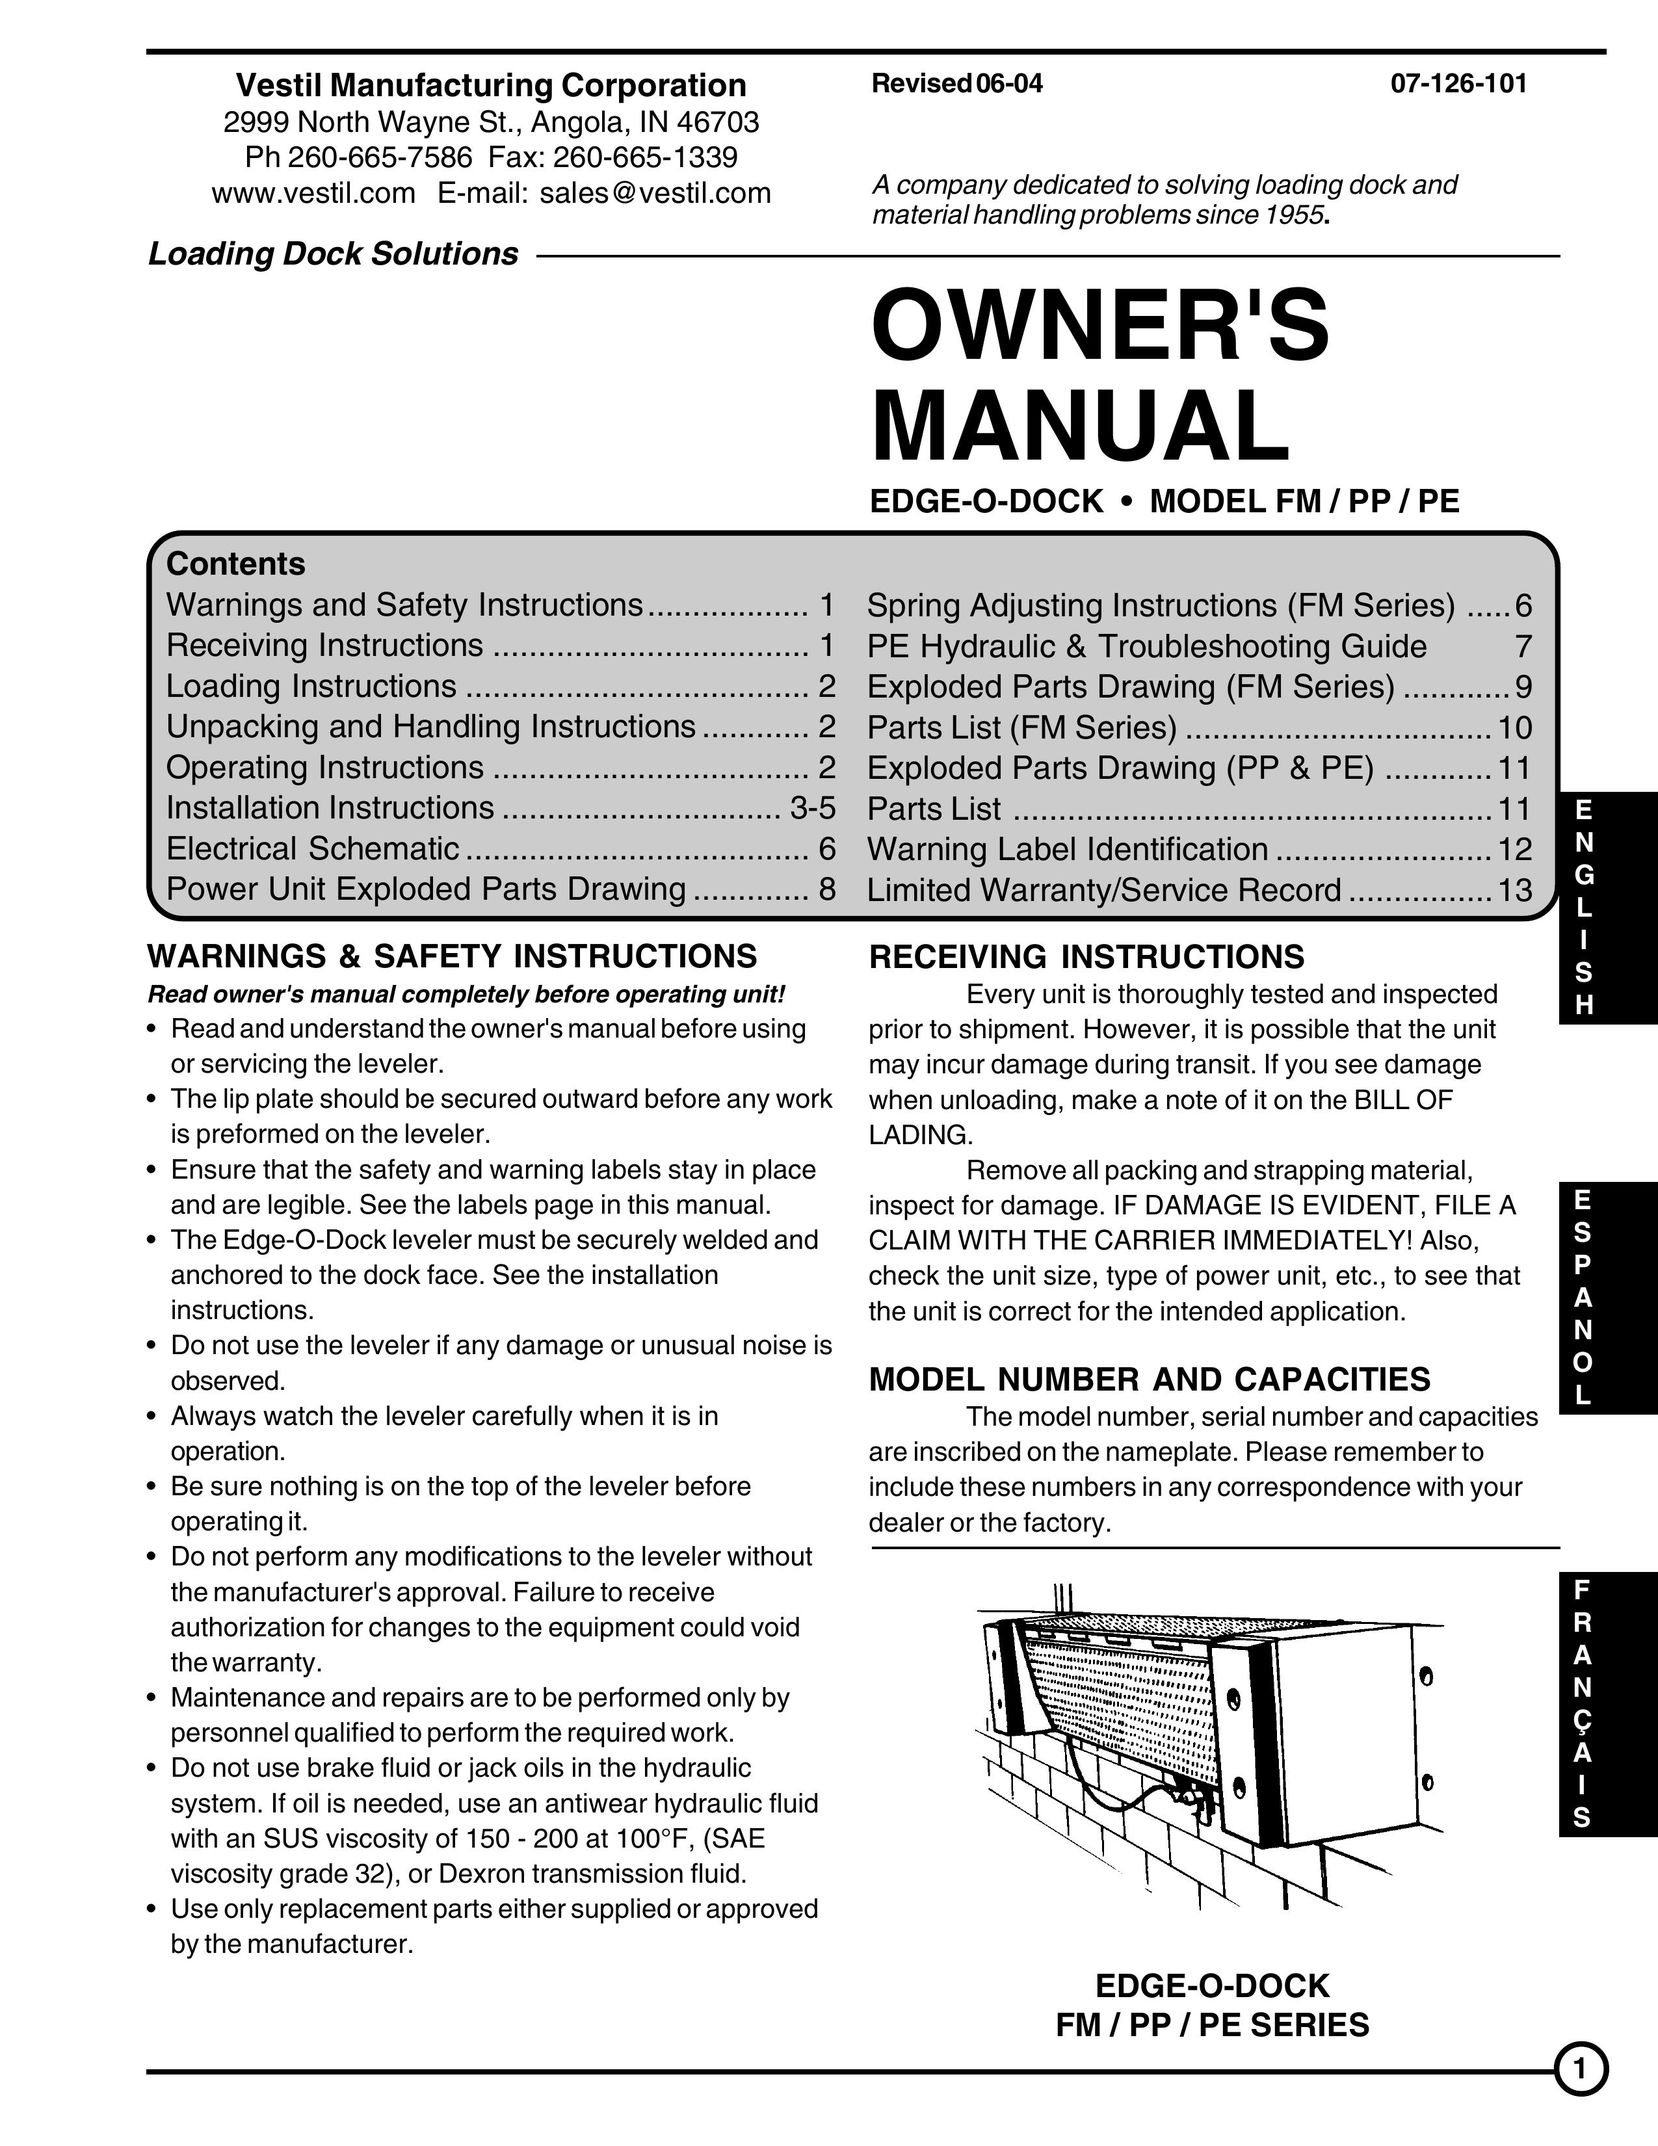 Skil FM Series Drill User Manual